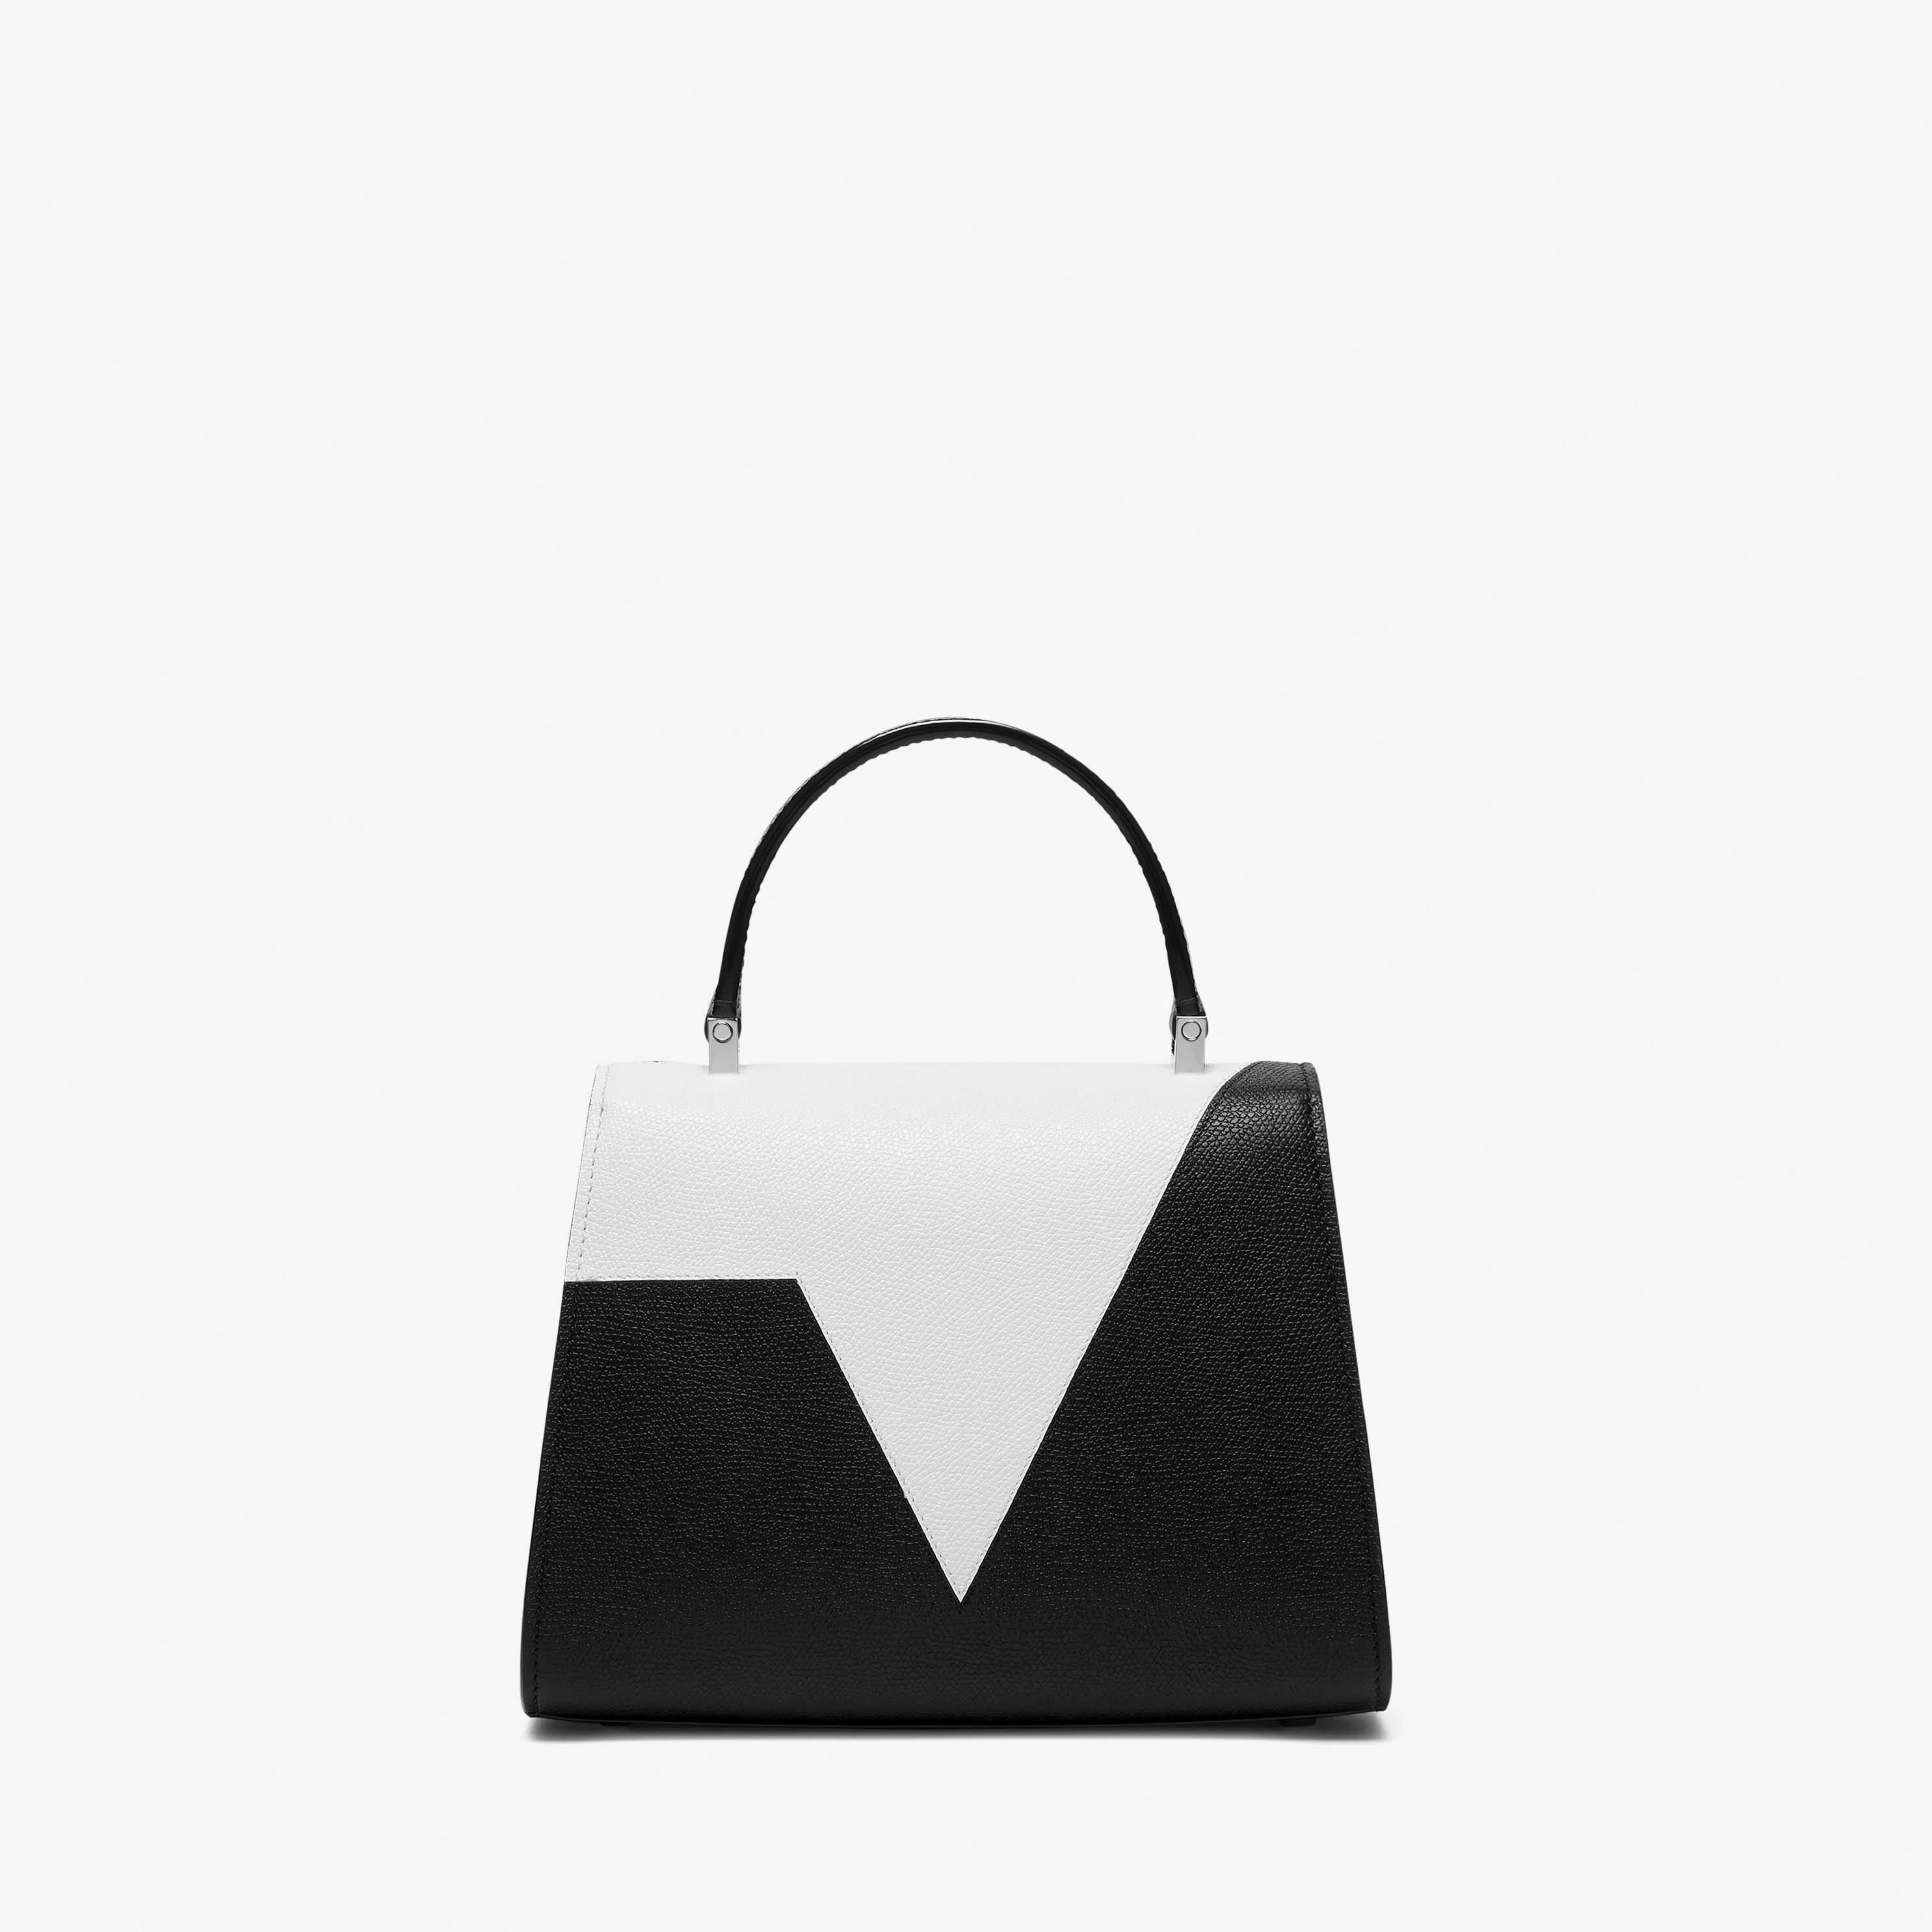 Iside V Intarsia Top Handle Mini Bag - Black/Pergamena White - Vitello VS-Intarsio V - Valextra - 6